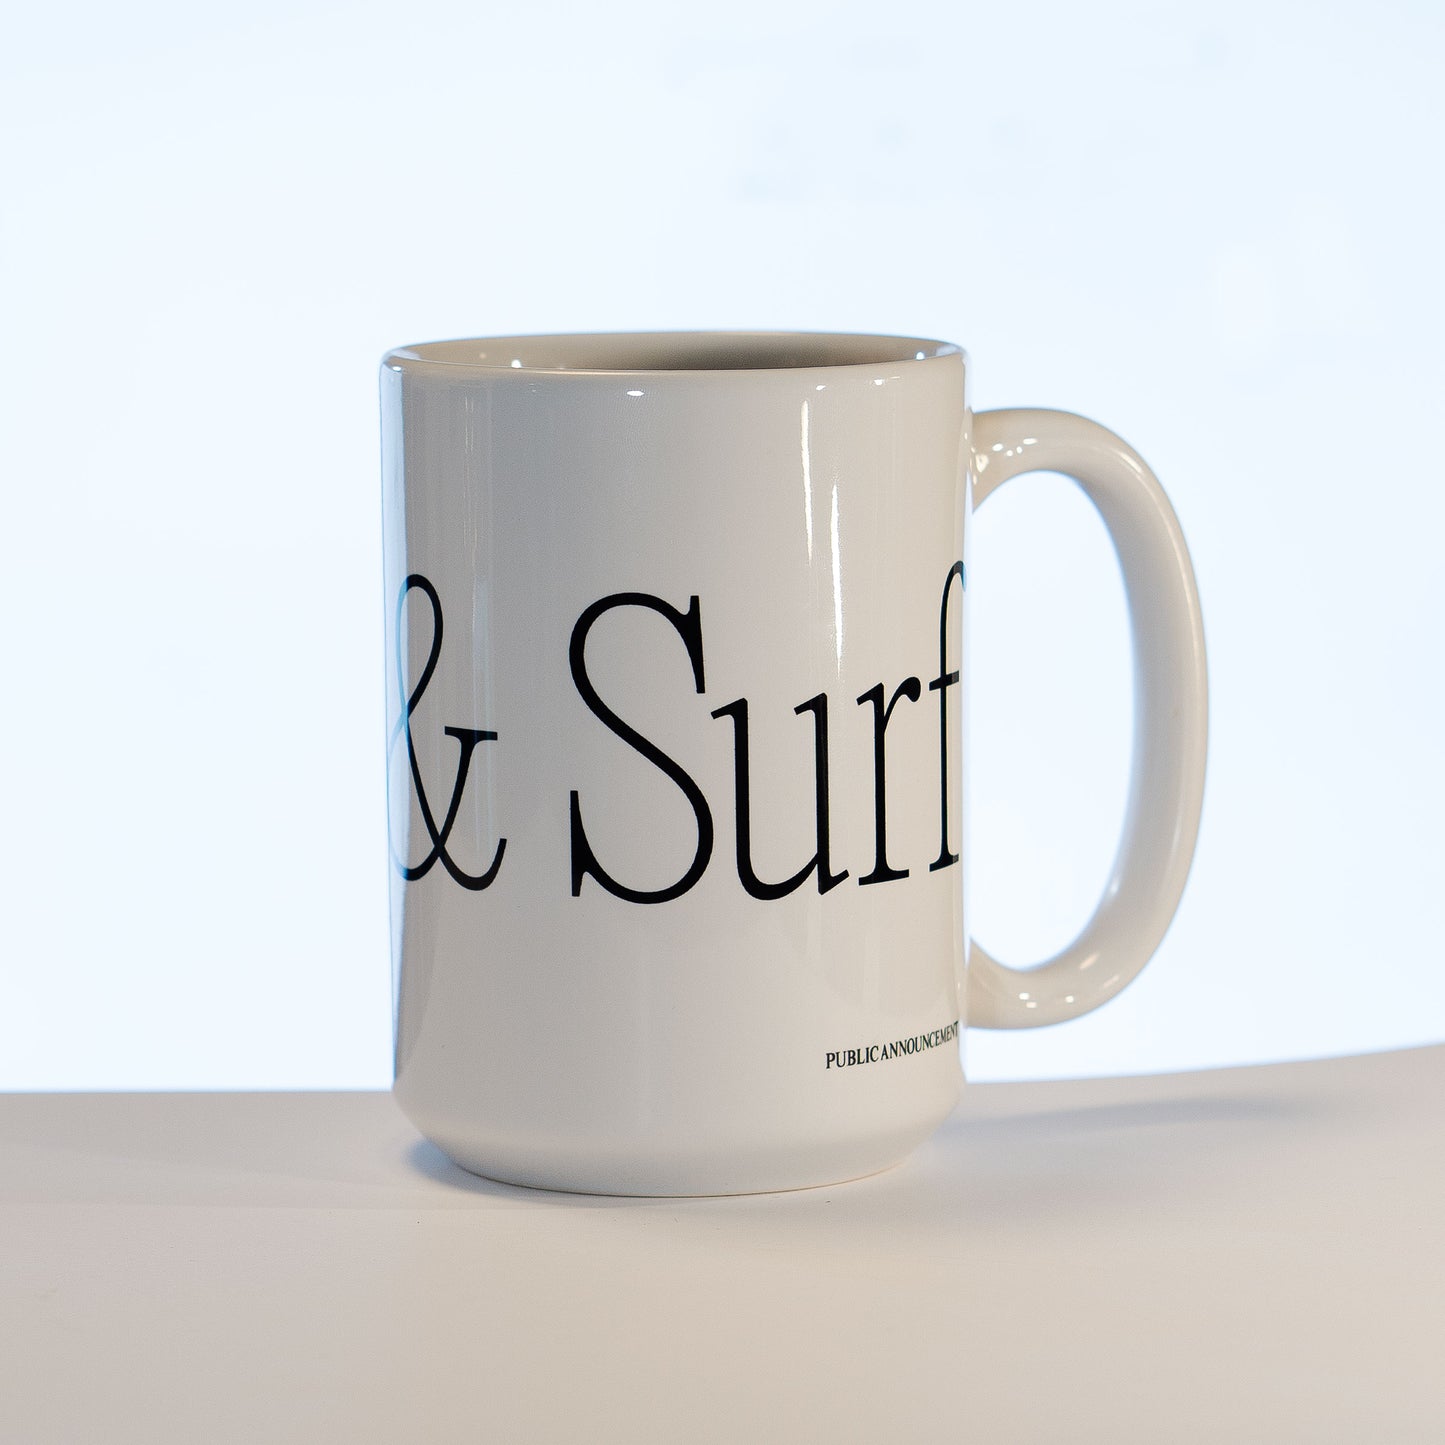 “Click & Surf” 15oz Mug